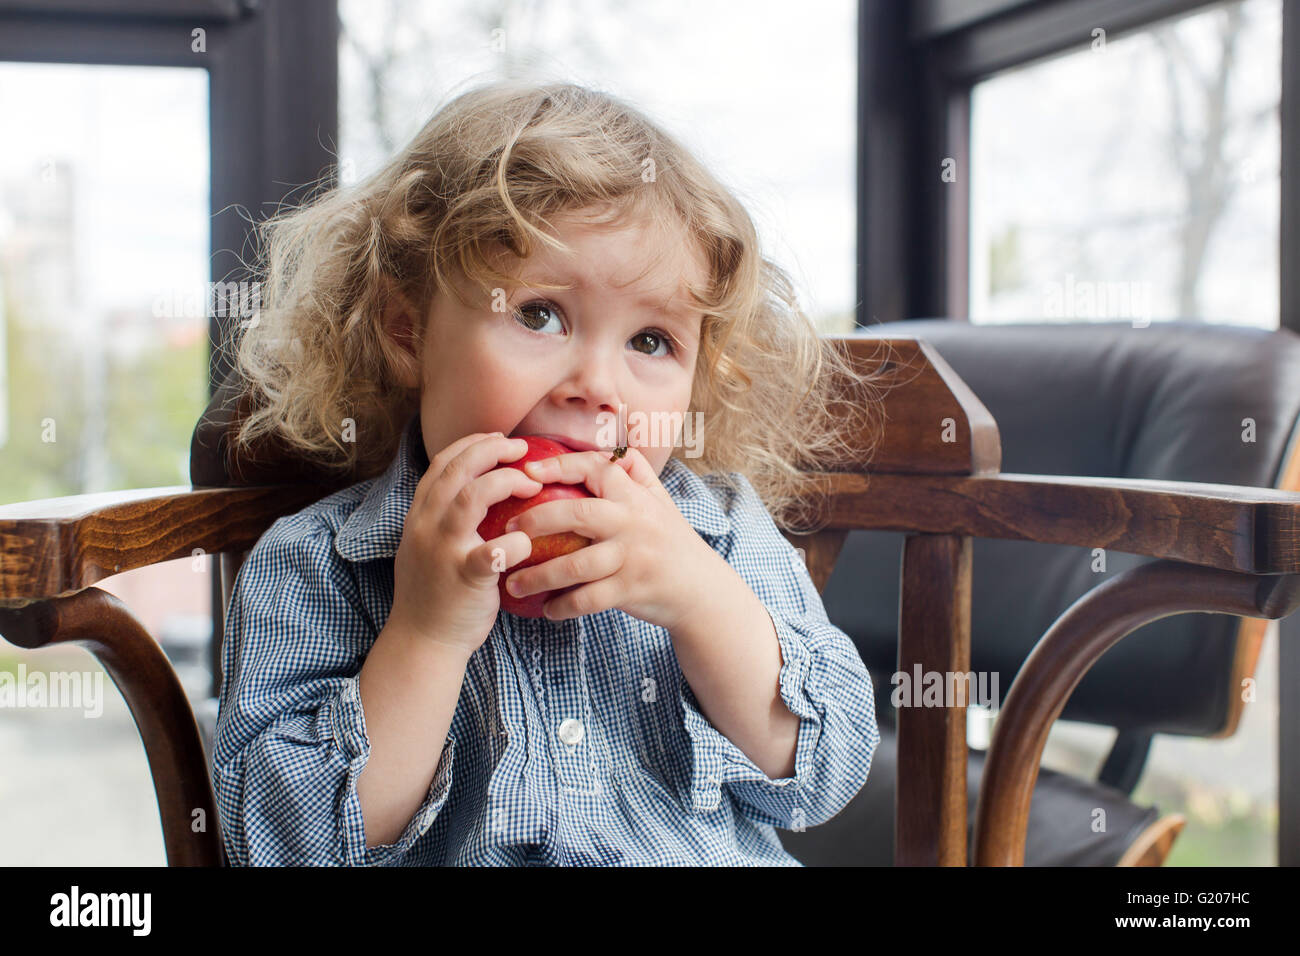 kleines Kind Essen drinnen roten Apfel Stockfoto